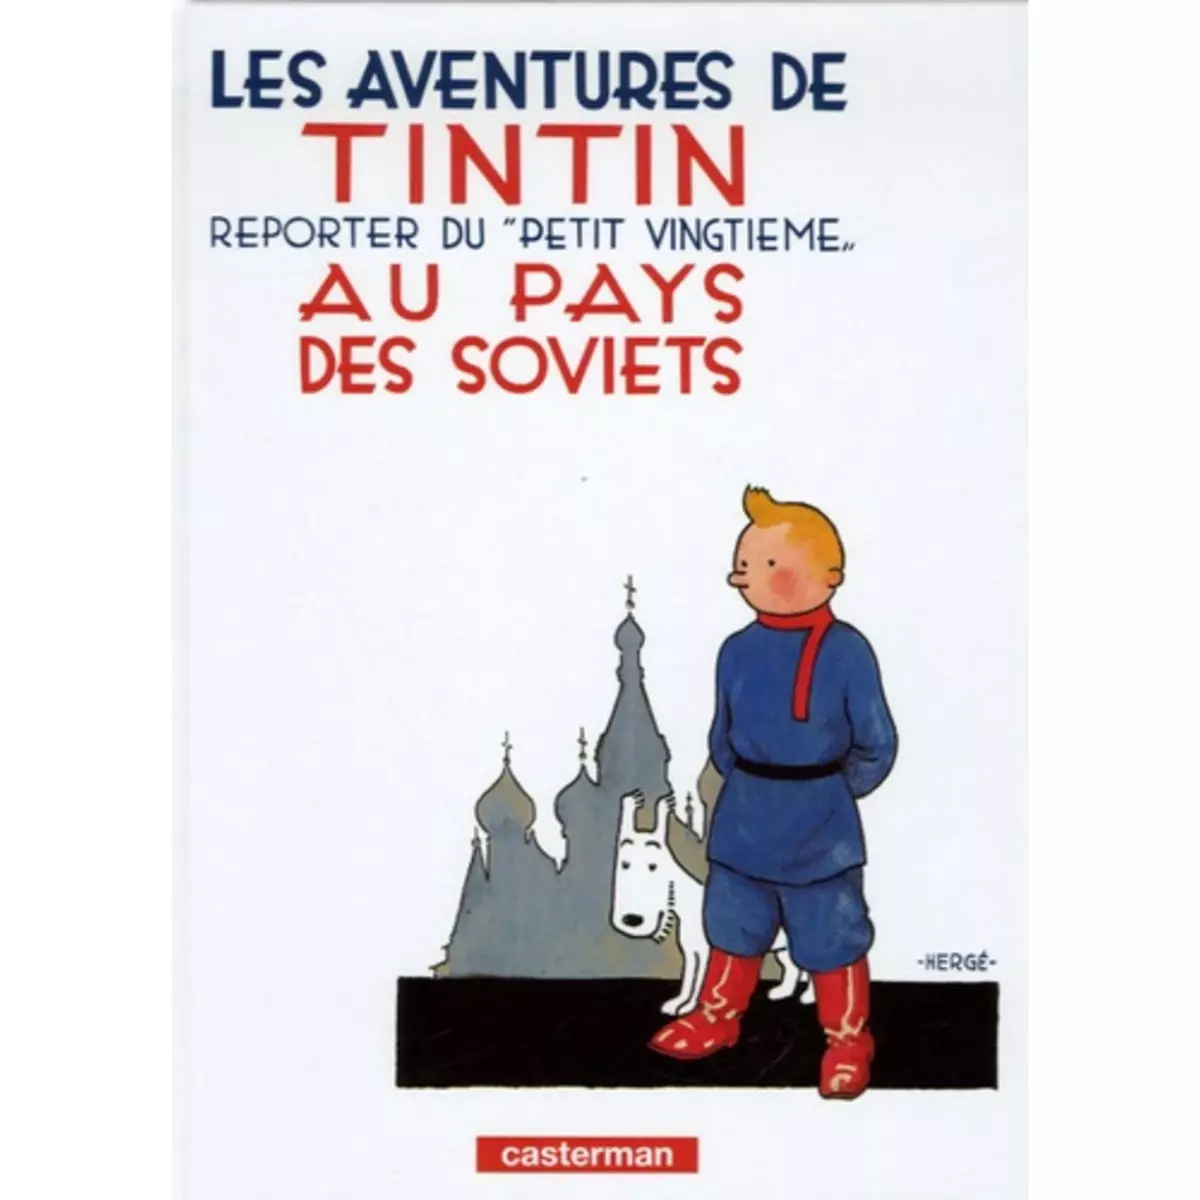  LES AVENTURES DE TINTIN TOME 1 : TINTIN REPORTER DU  PETIT VINGTIEME  AU PAYS DES SOVIETS. MINI-ALBUM, Hergé